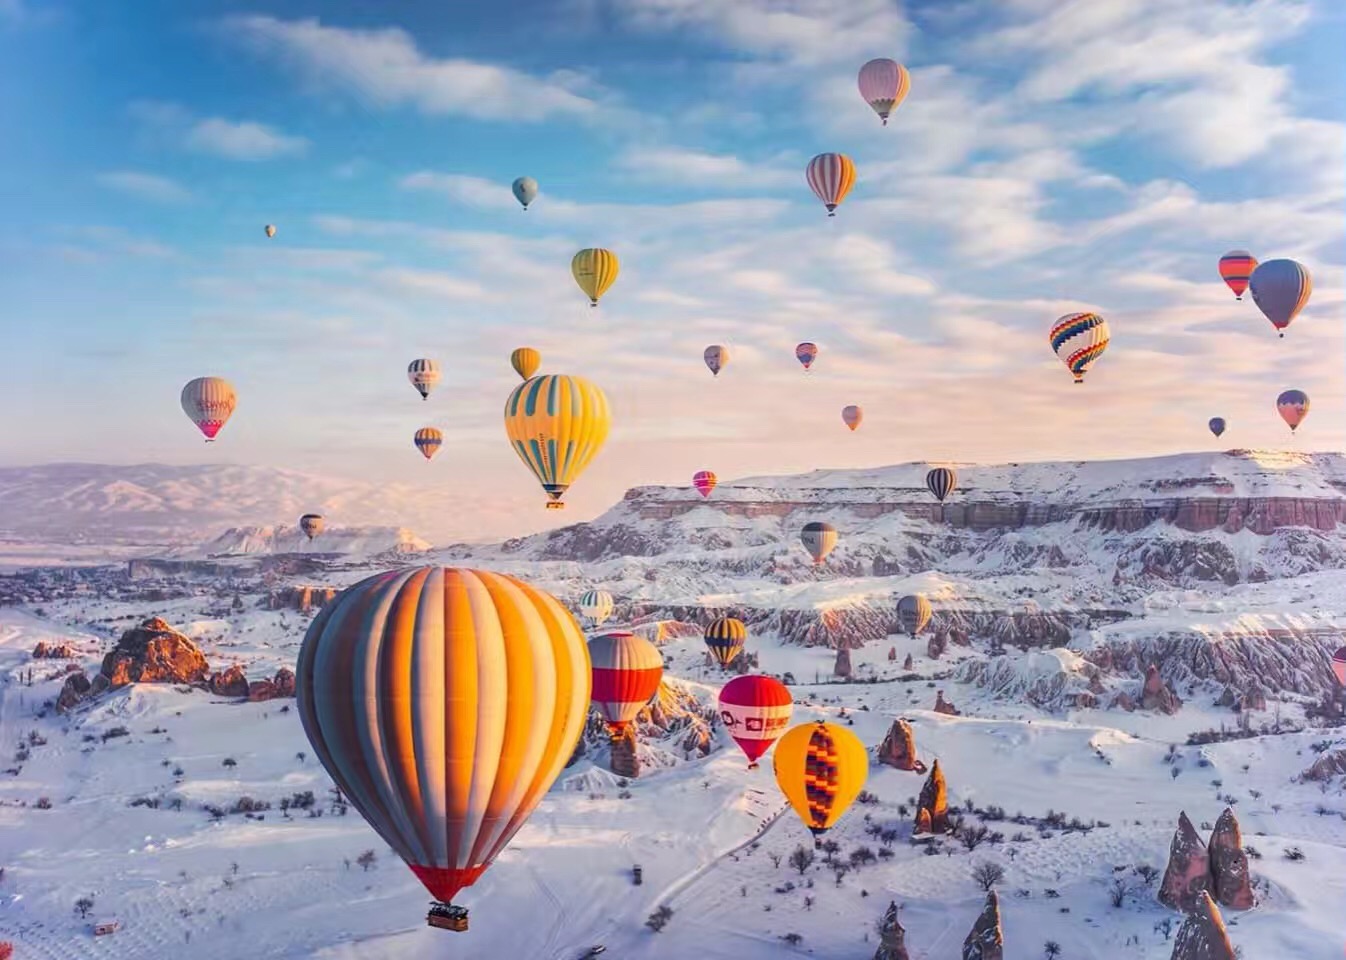 热气球 土耳其热气球(热气球受天气等因素影响,具体参与时间以实际